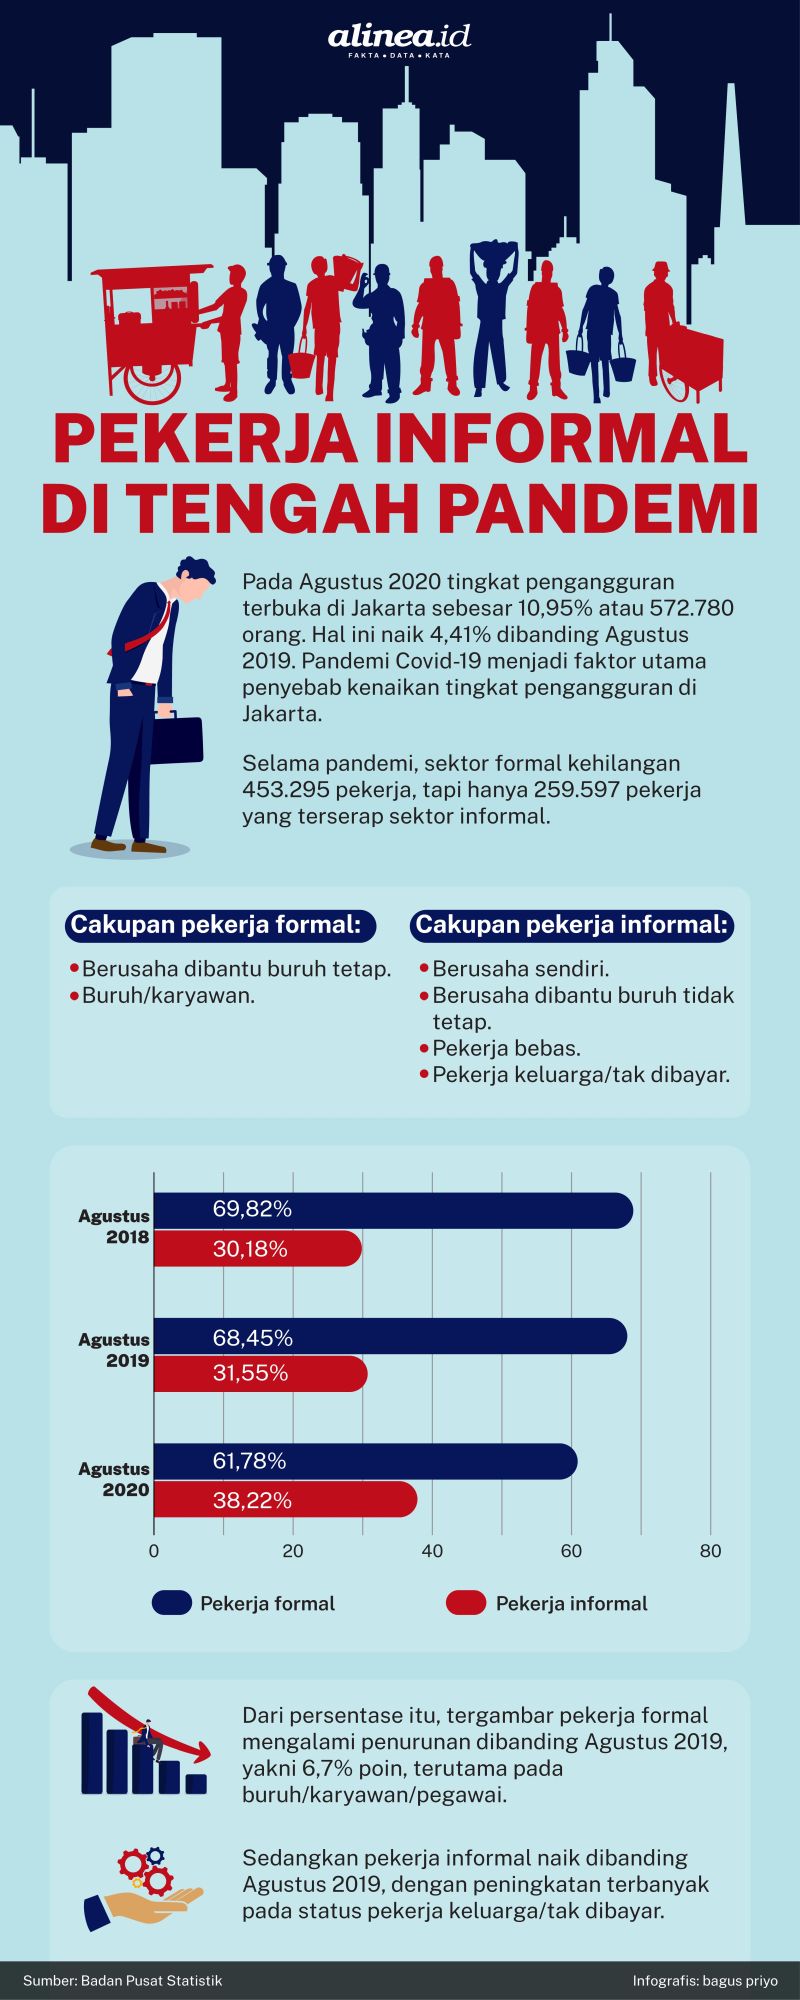 Infografik Alinea.id/Bagus Priyo.